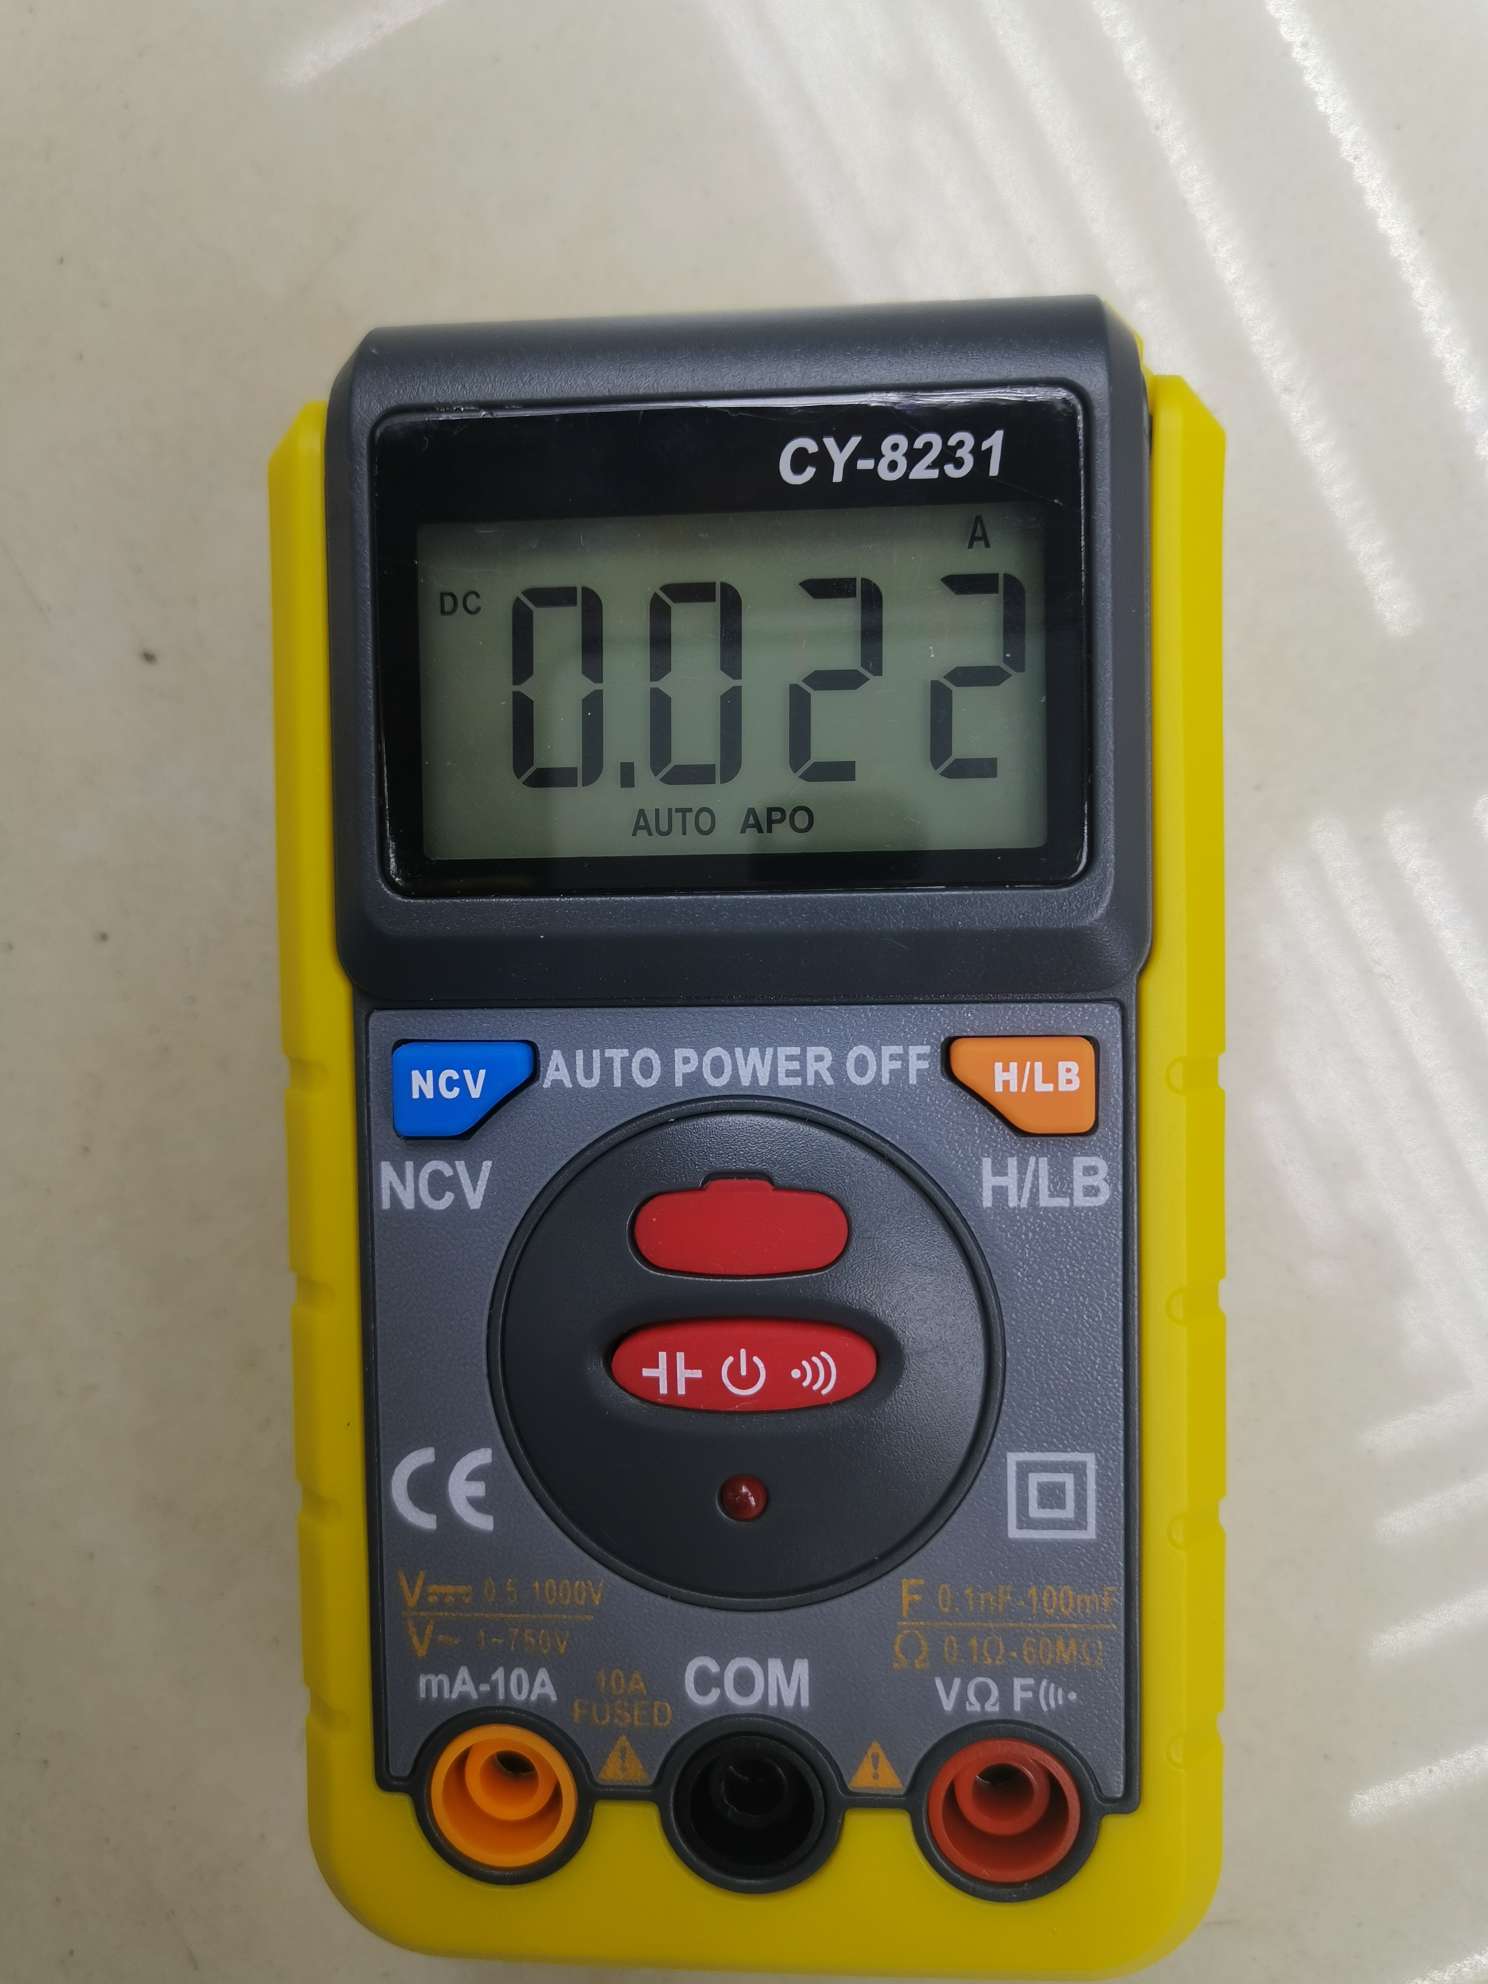 傻瓜万用表CY8231 DIGITAL MULTIMETER 电测量仪器仪表 多用表 万能表 MULTIMETER图